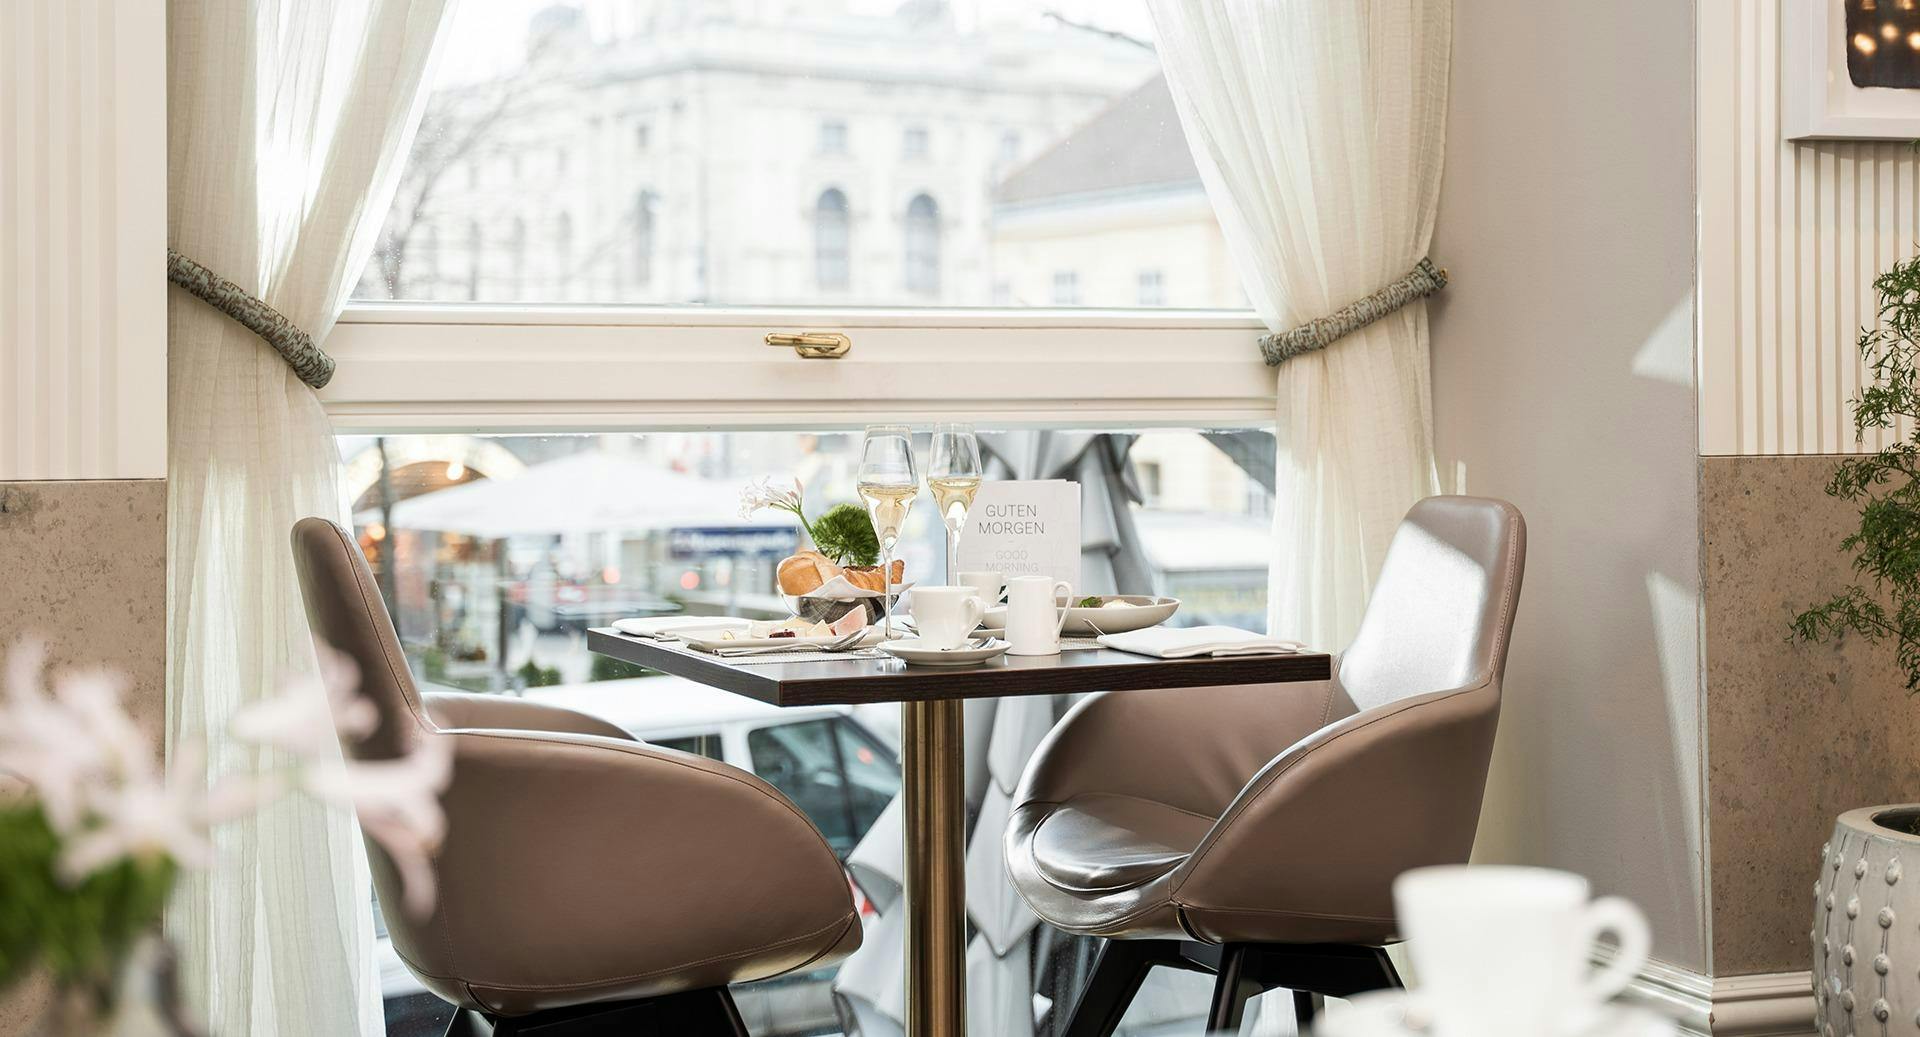 Photo of restaurant Veranda in 7. District, Vienna